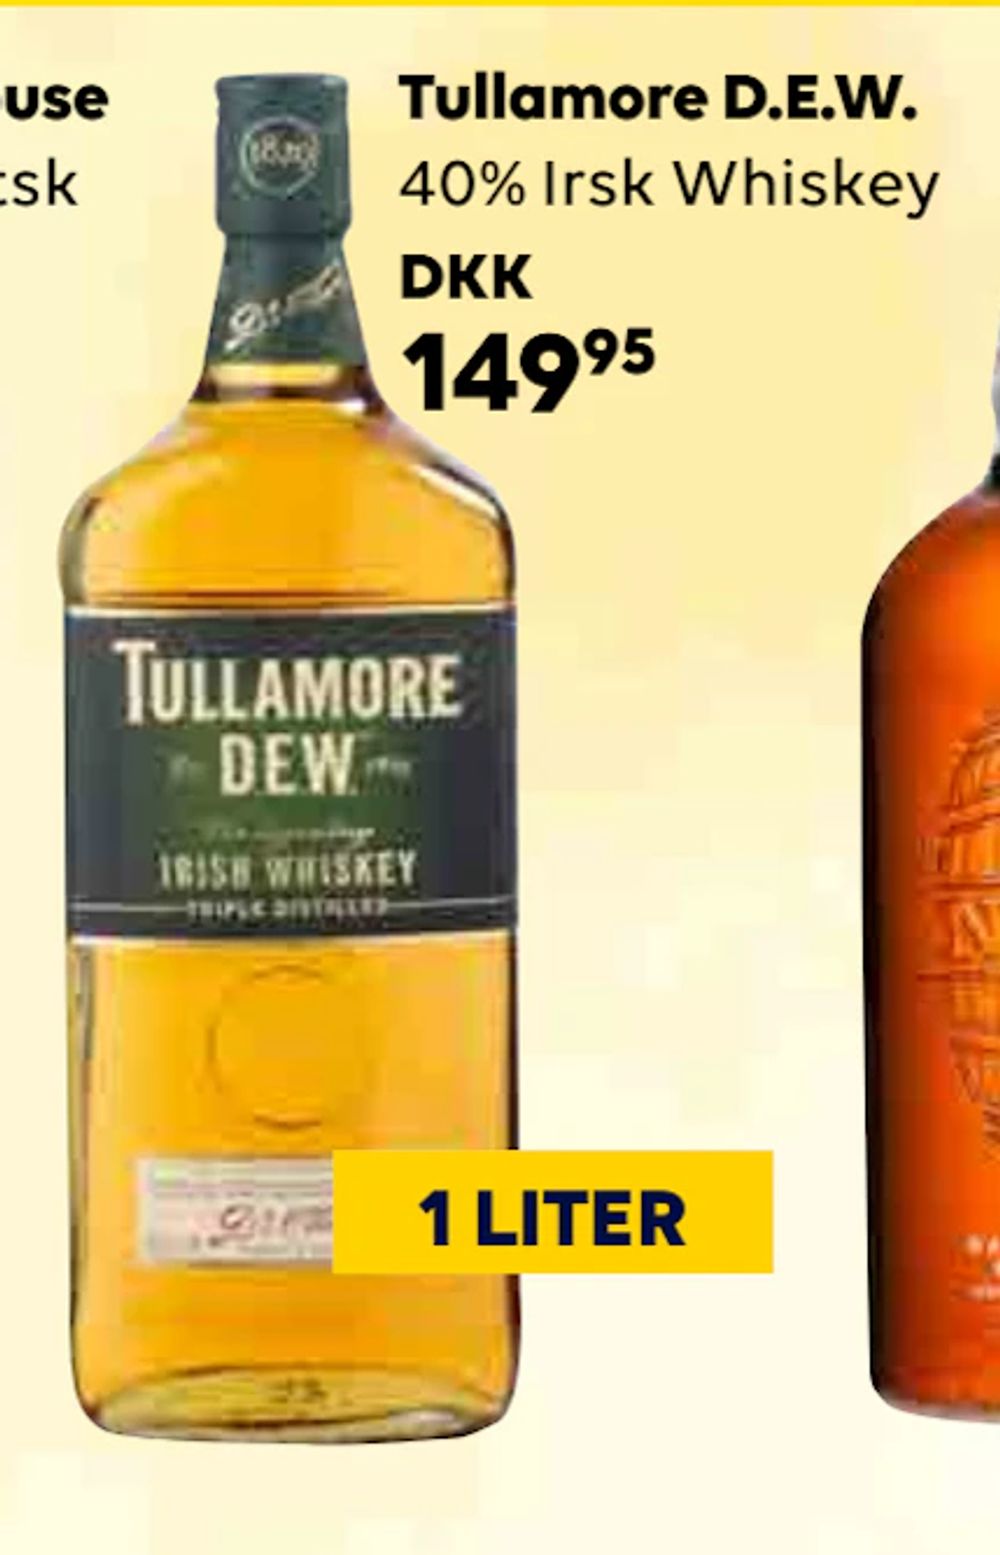 Tilbud på Tullamore D.E.W fra BorderShop til 149,95 kr.